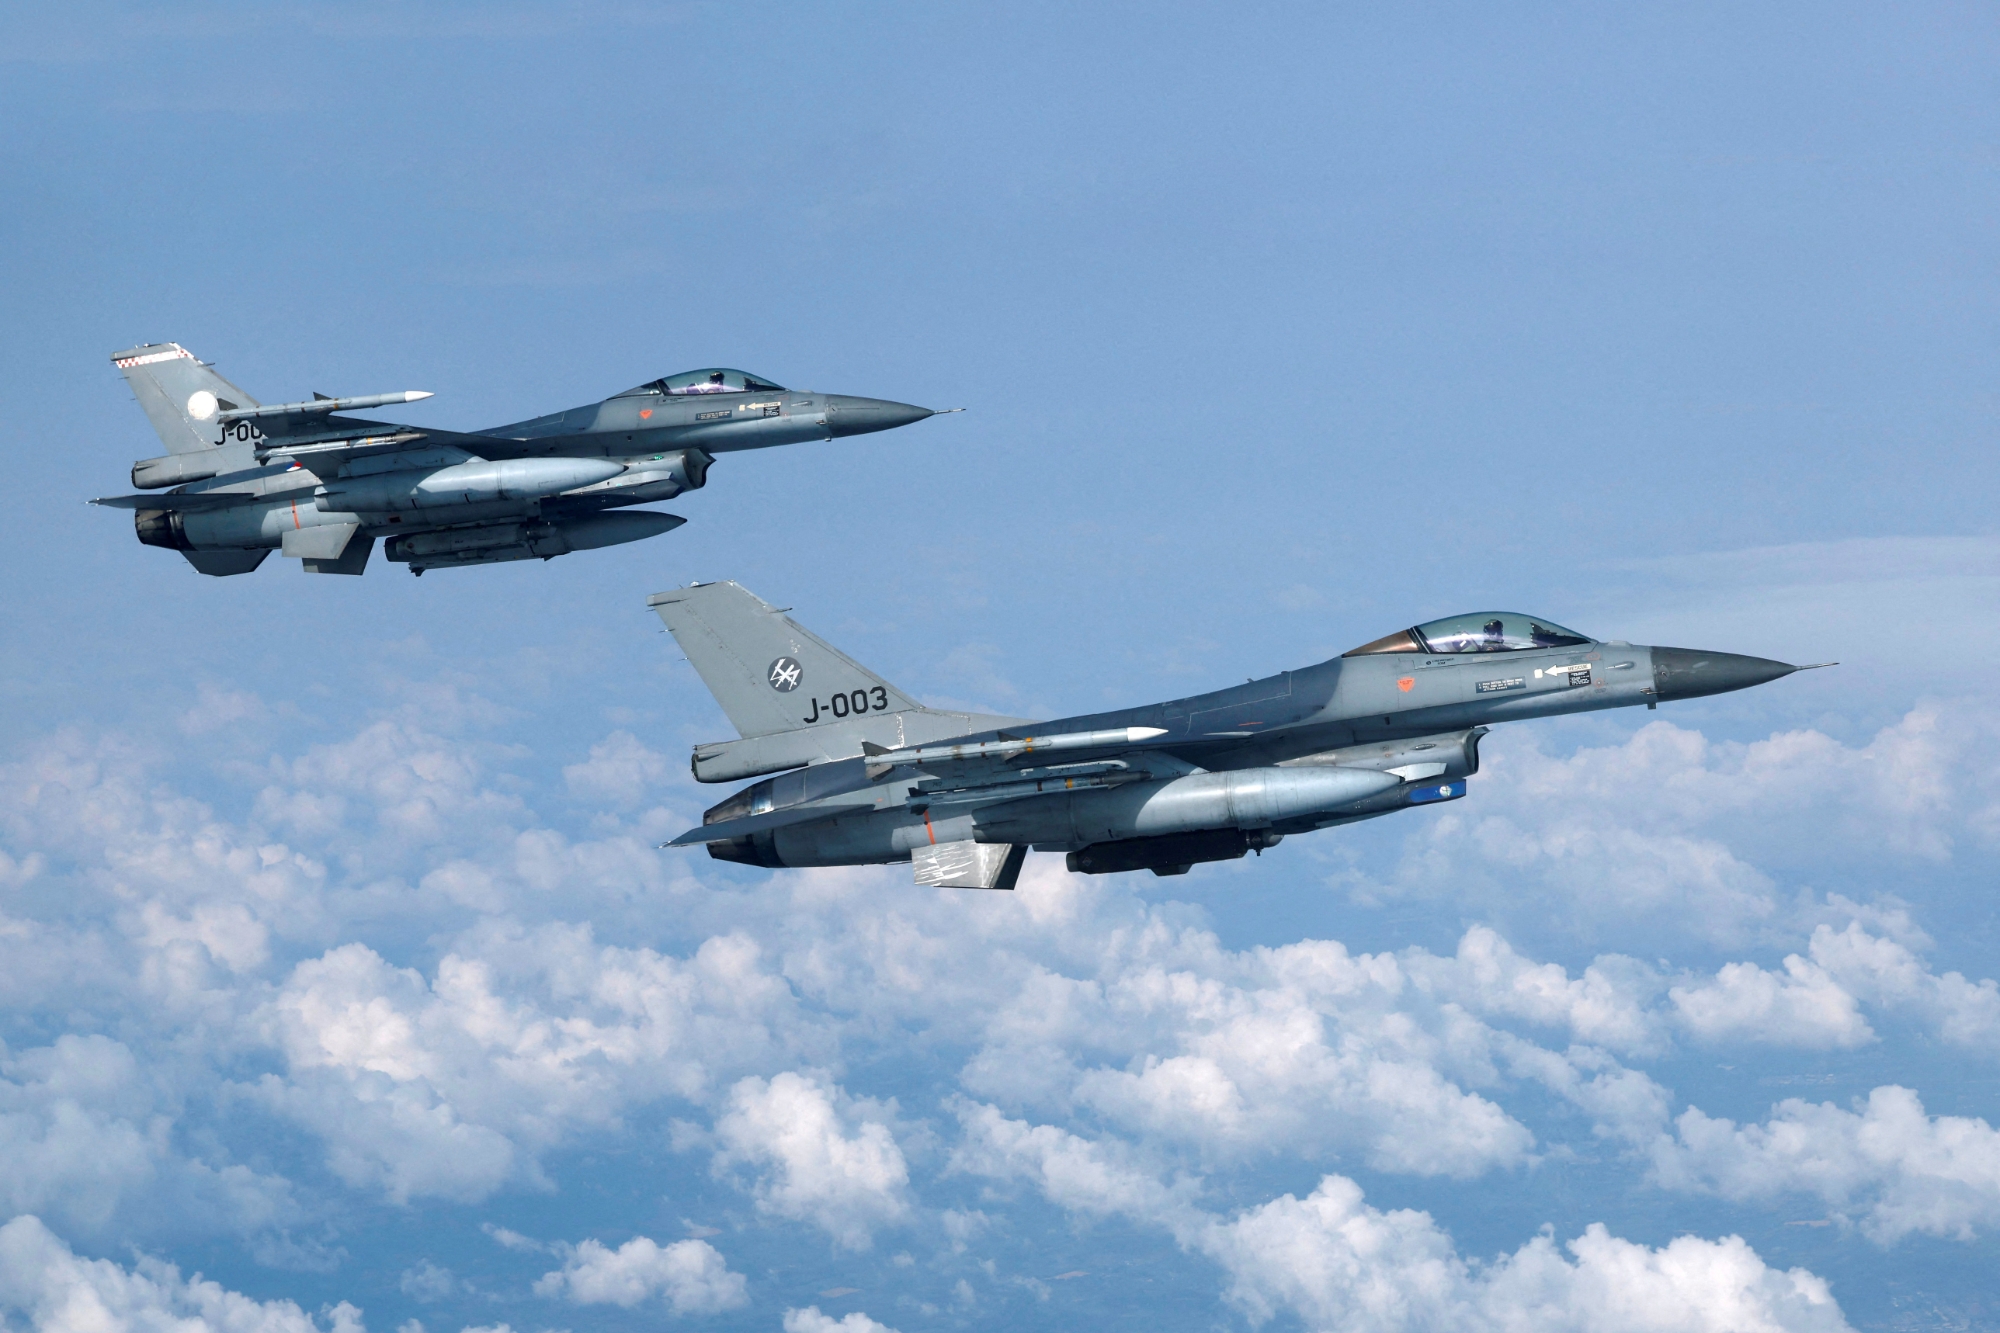 Officiellt: Nederländerna överför ytterligare 6 F-16 Fighting Falcon stridsflygplan till Ukraina